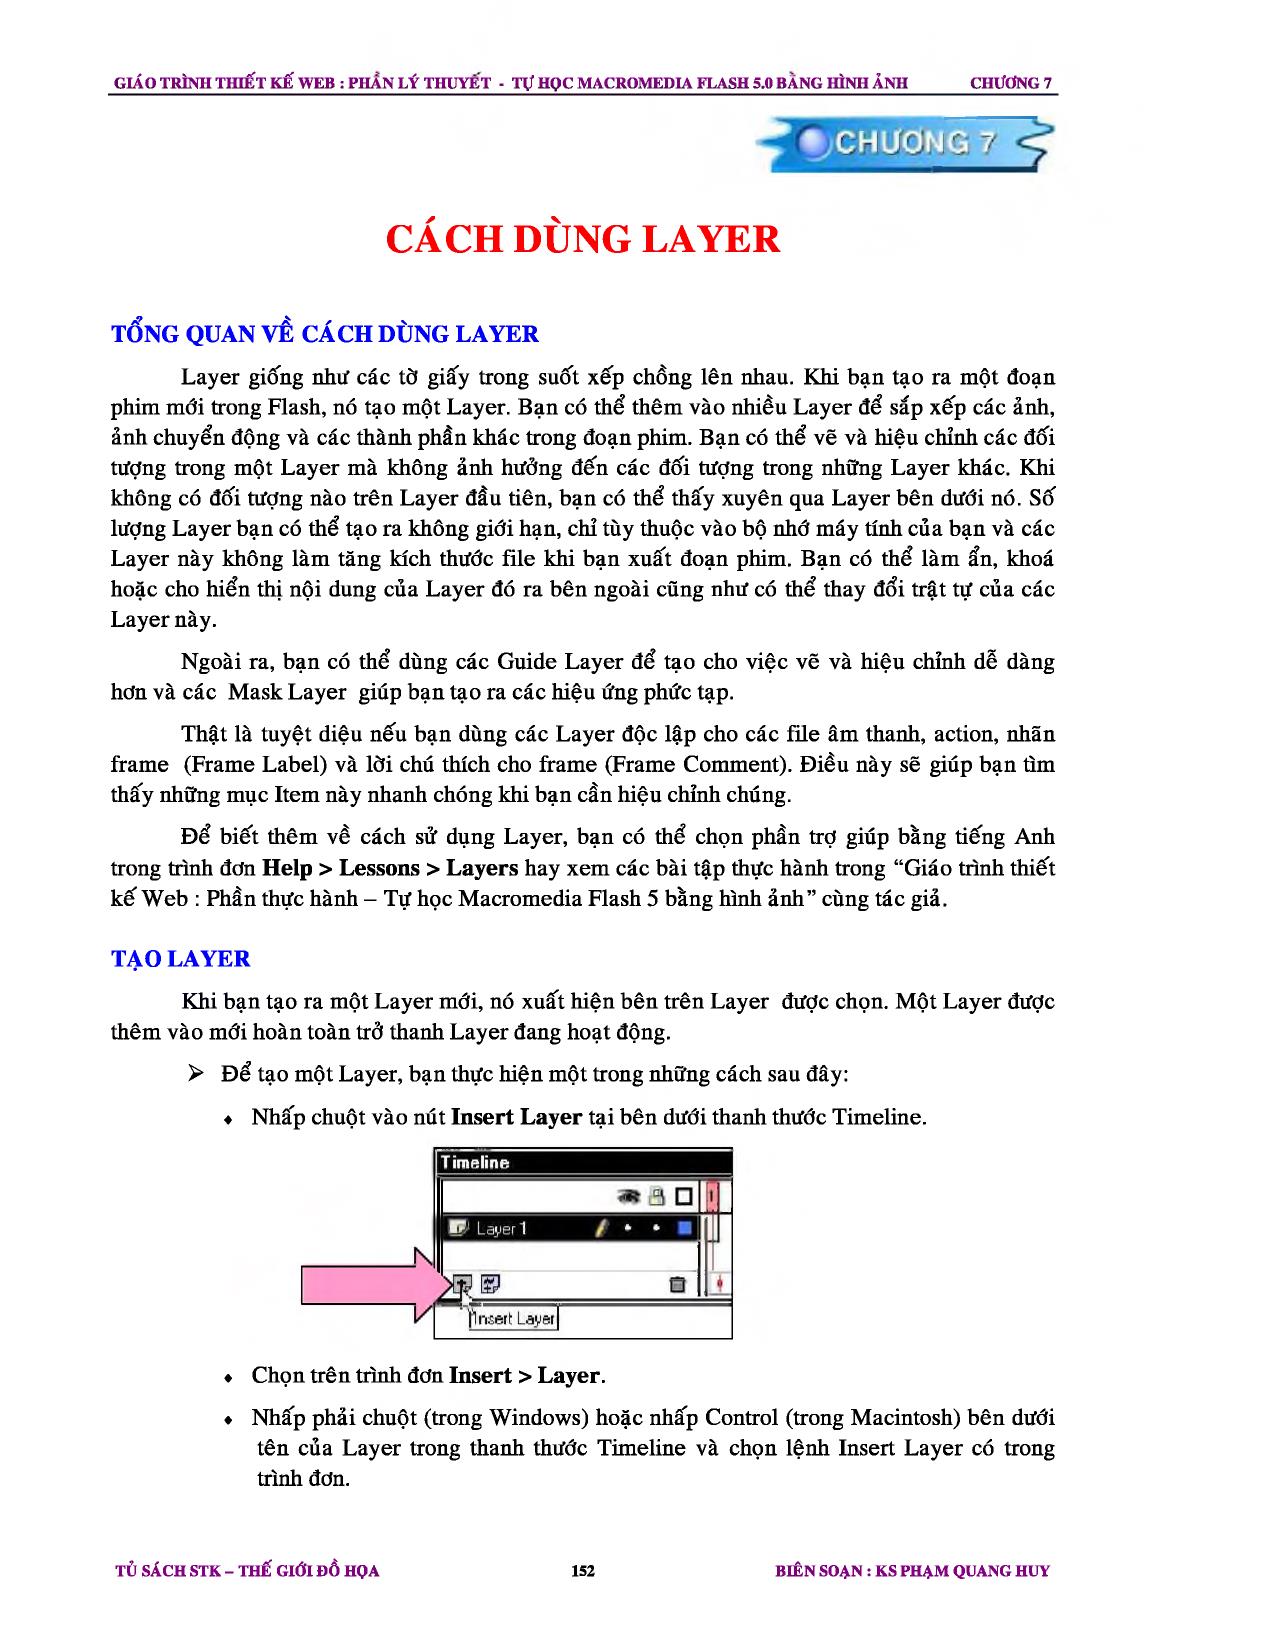 Giáo trình Thiết kế Web - Chương 7: Cách dụng layer trang 1